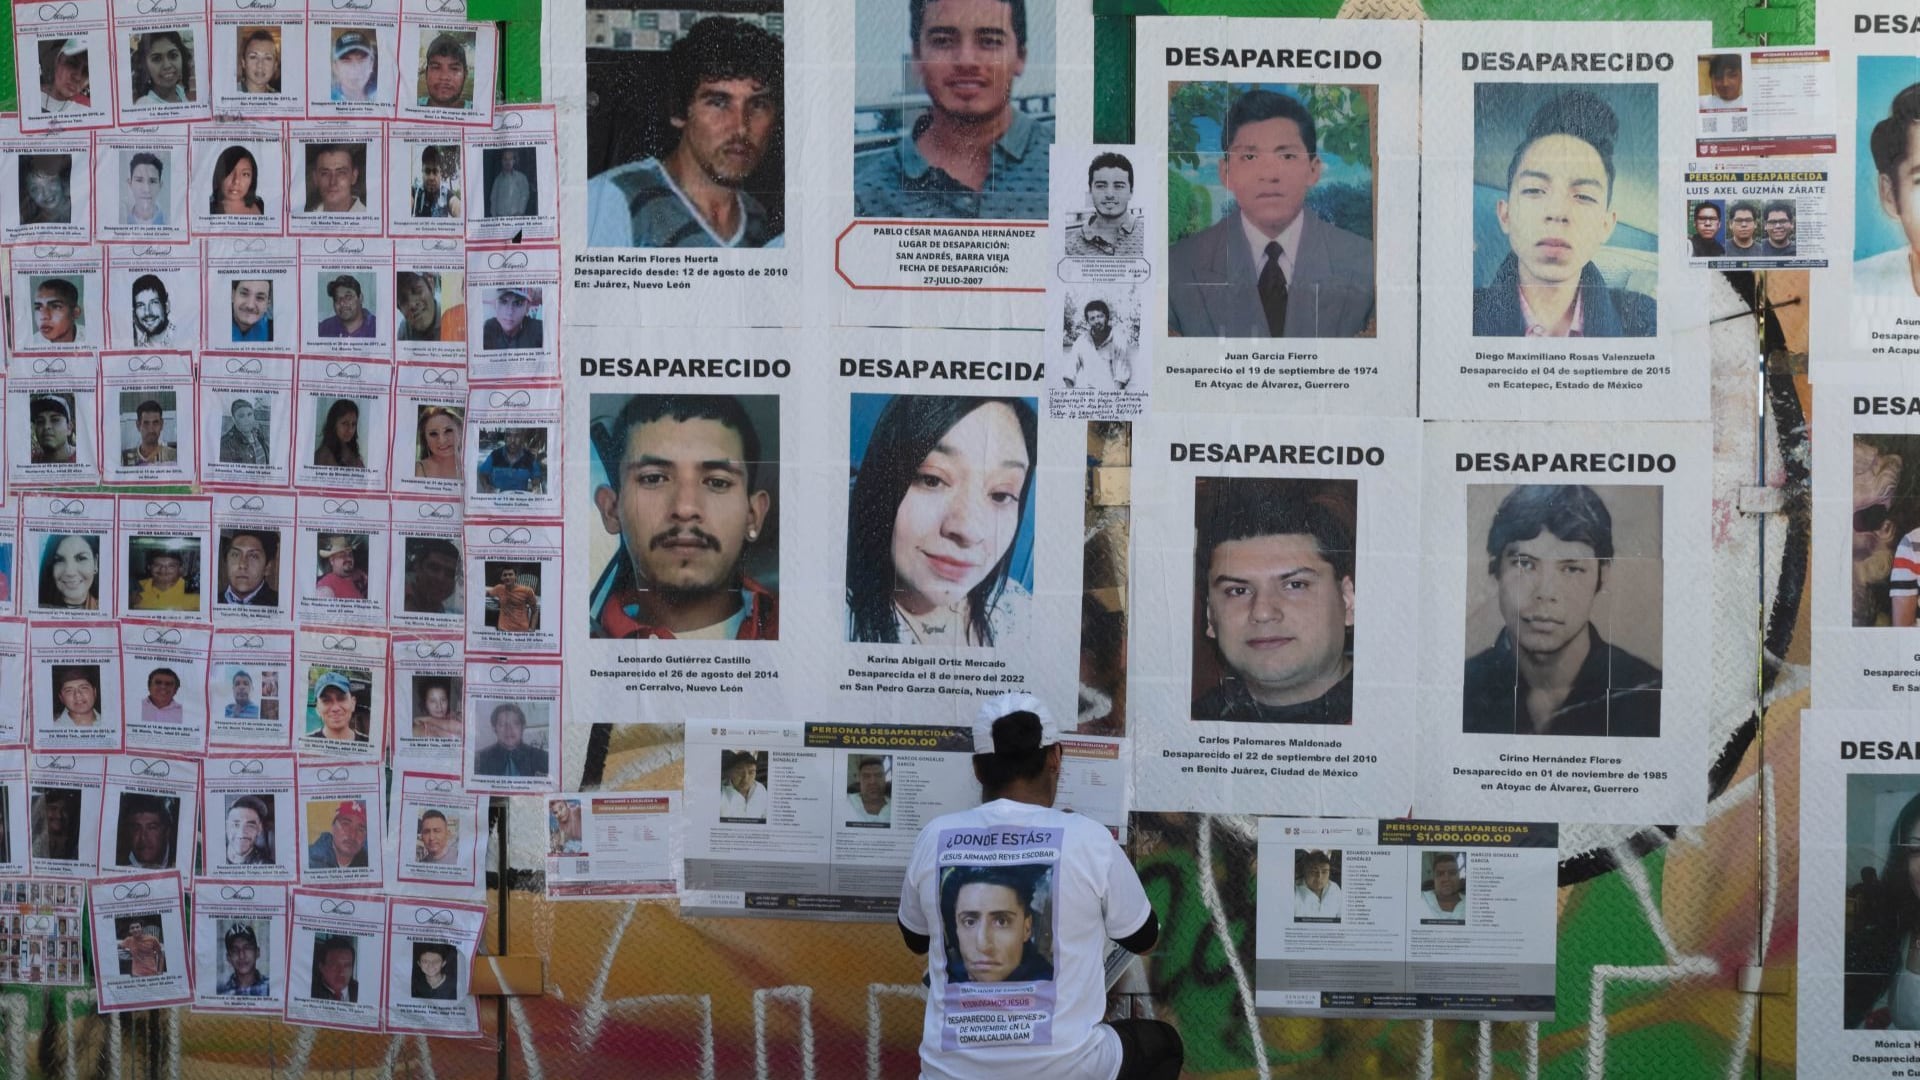 Colectivos se reunieron en los alrededores de la Glorieta de las y los Desaparecidos para exigir la localización de sus familiares, en México se estima que en lo que va del actual gobierno federal han desaparecido más de 110 diez mil personas.